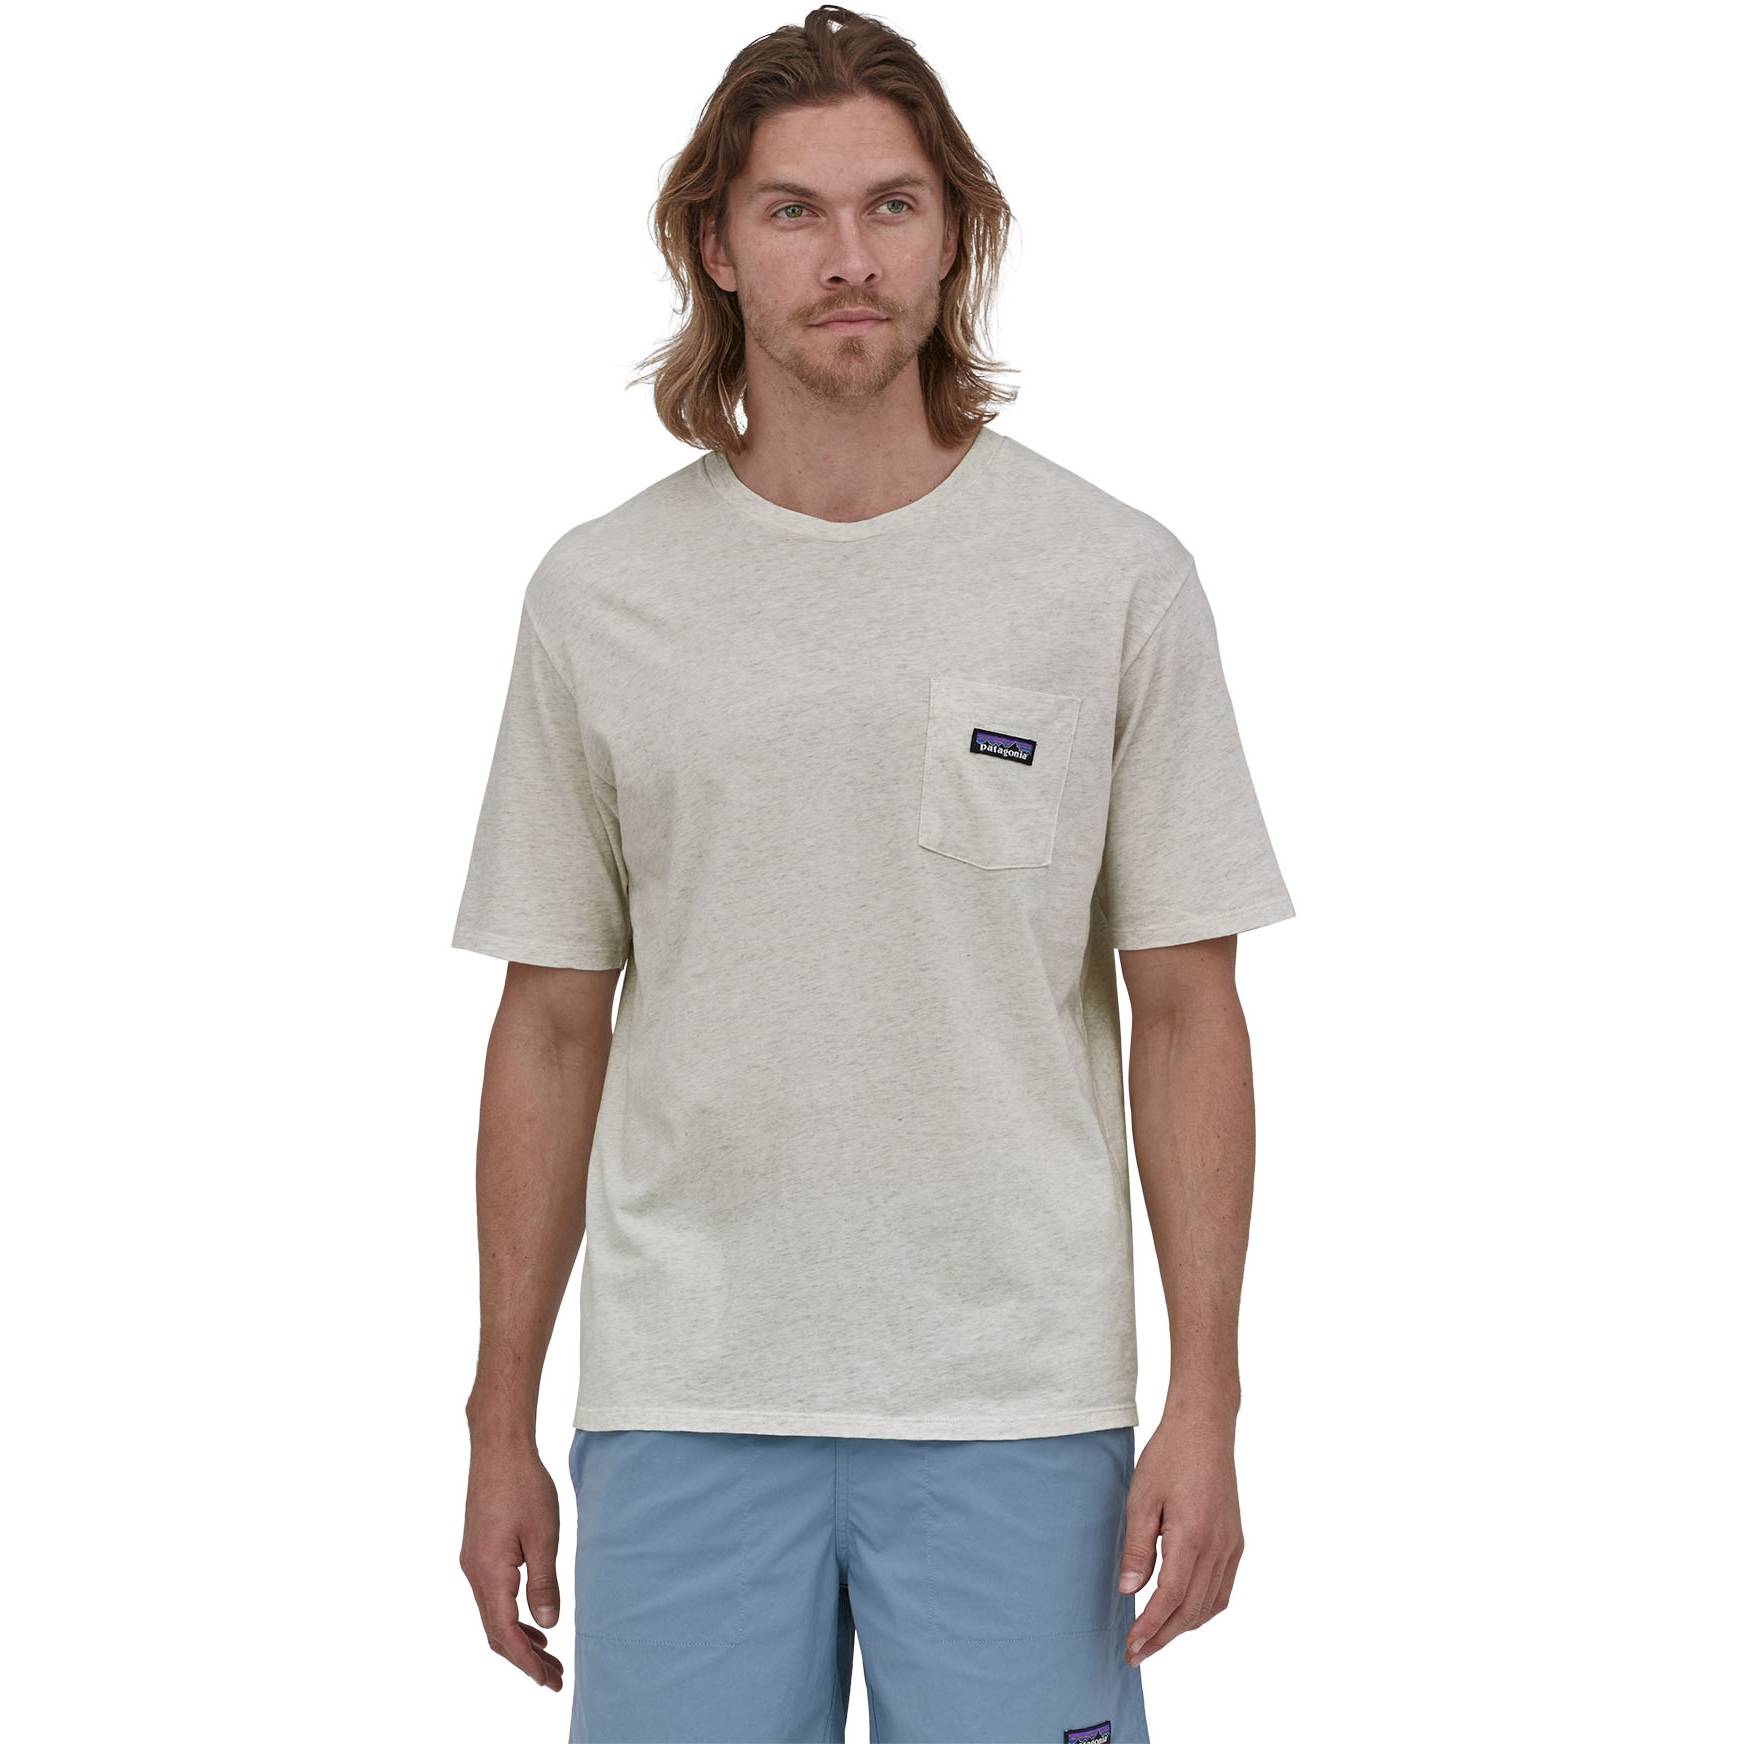 Produktbild von Patagonia Regenerative Organic Certified Cotton Lightweight Pocket Herren T-Shirt - Birch White